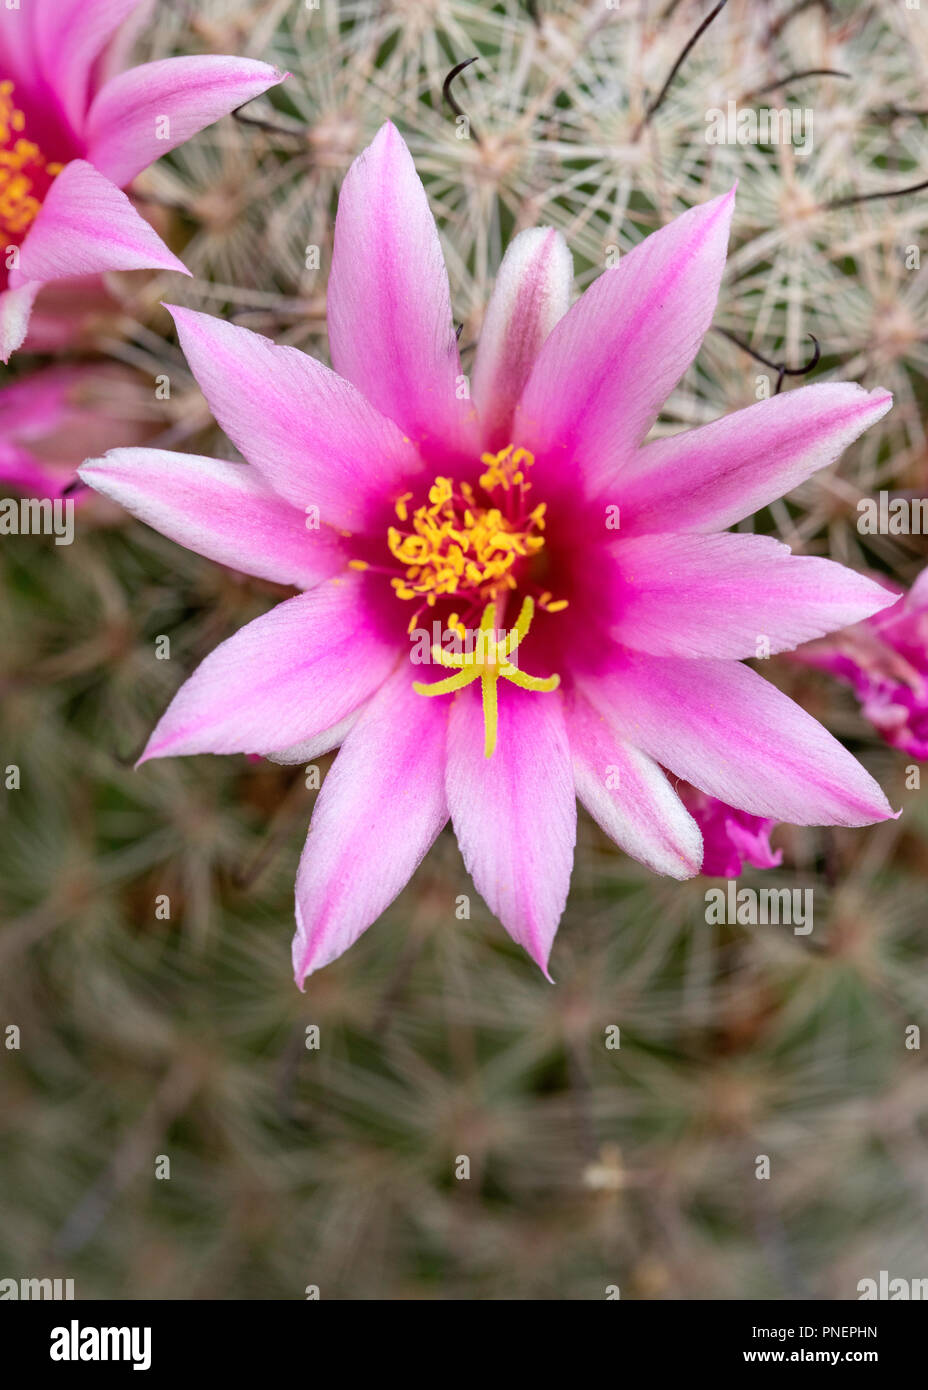 Cactus pincushion cactus -Fotos und -Bildmaterial in hoher Auflösung -  Seite 2 - Alamy